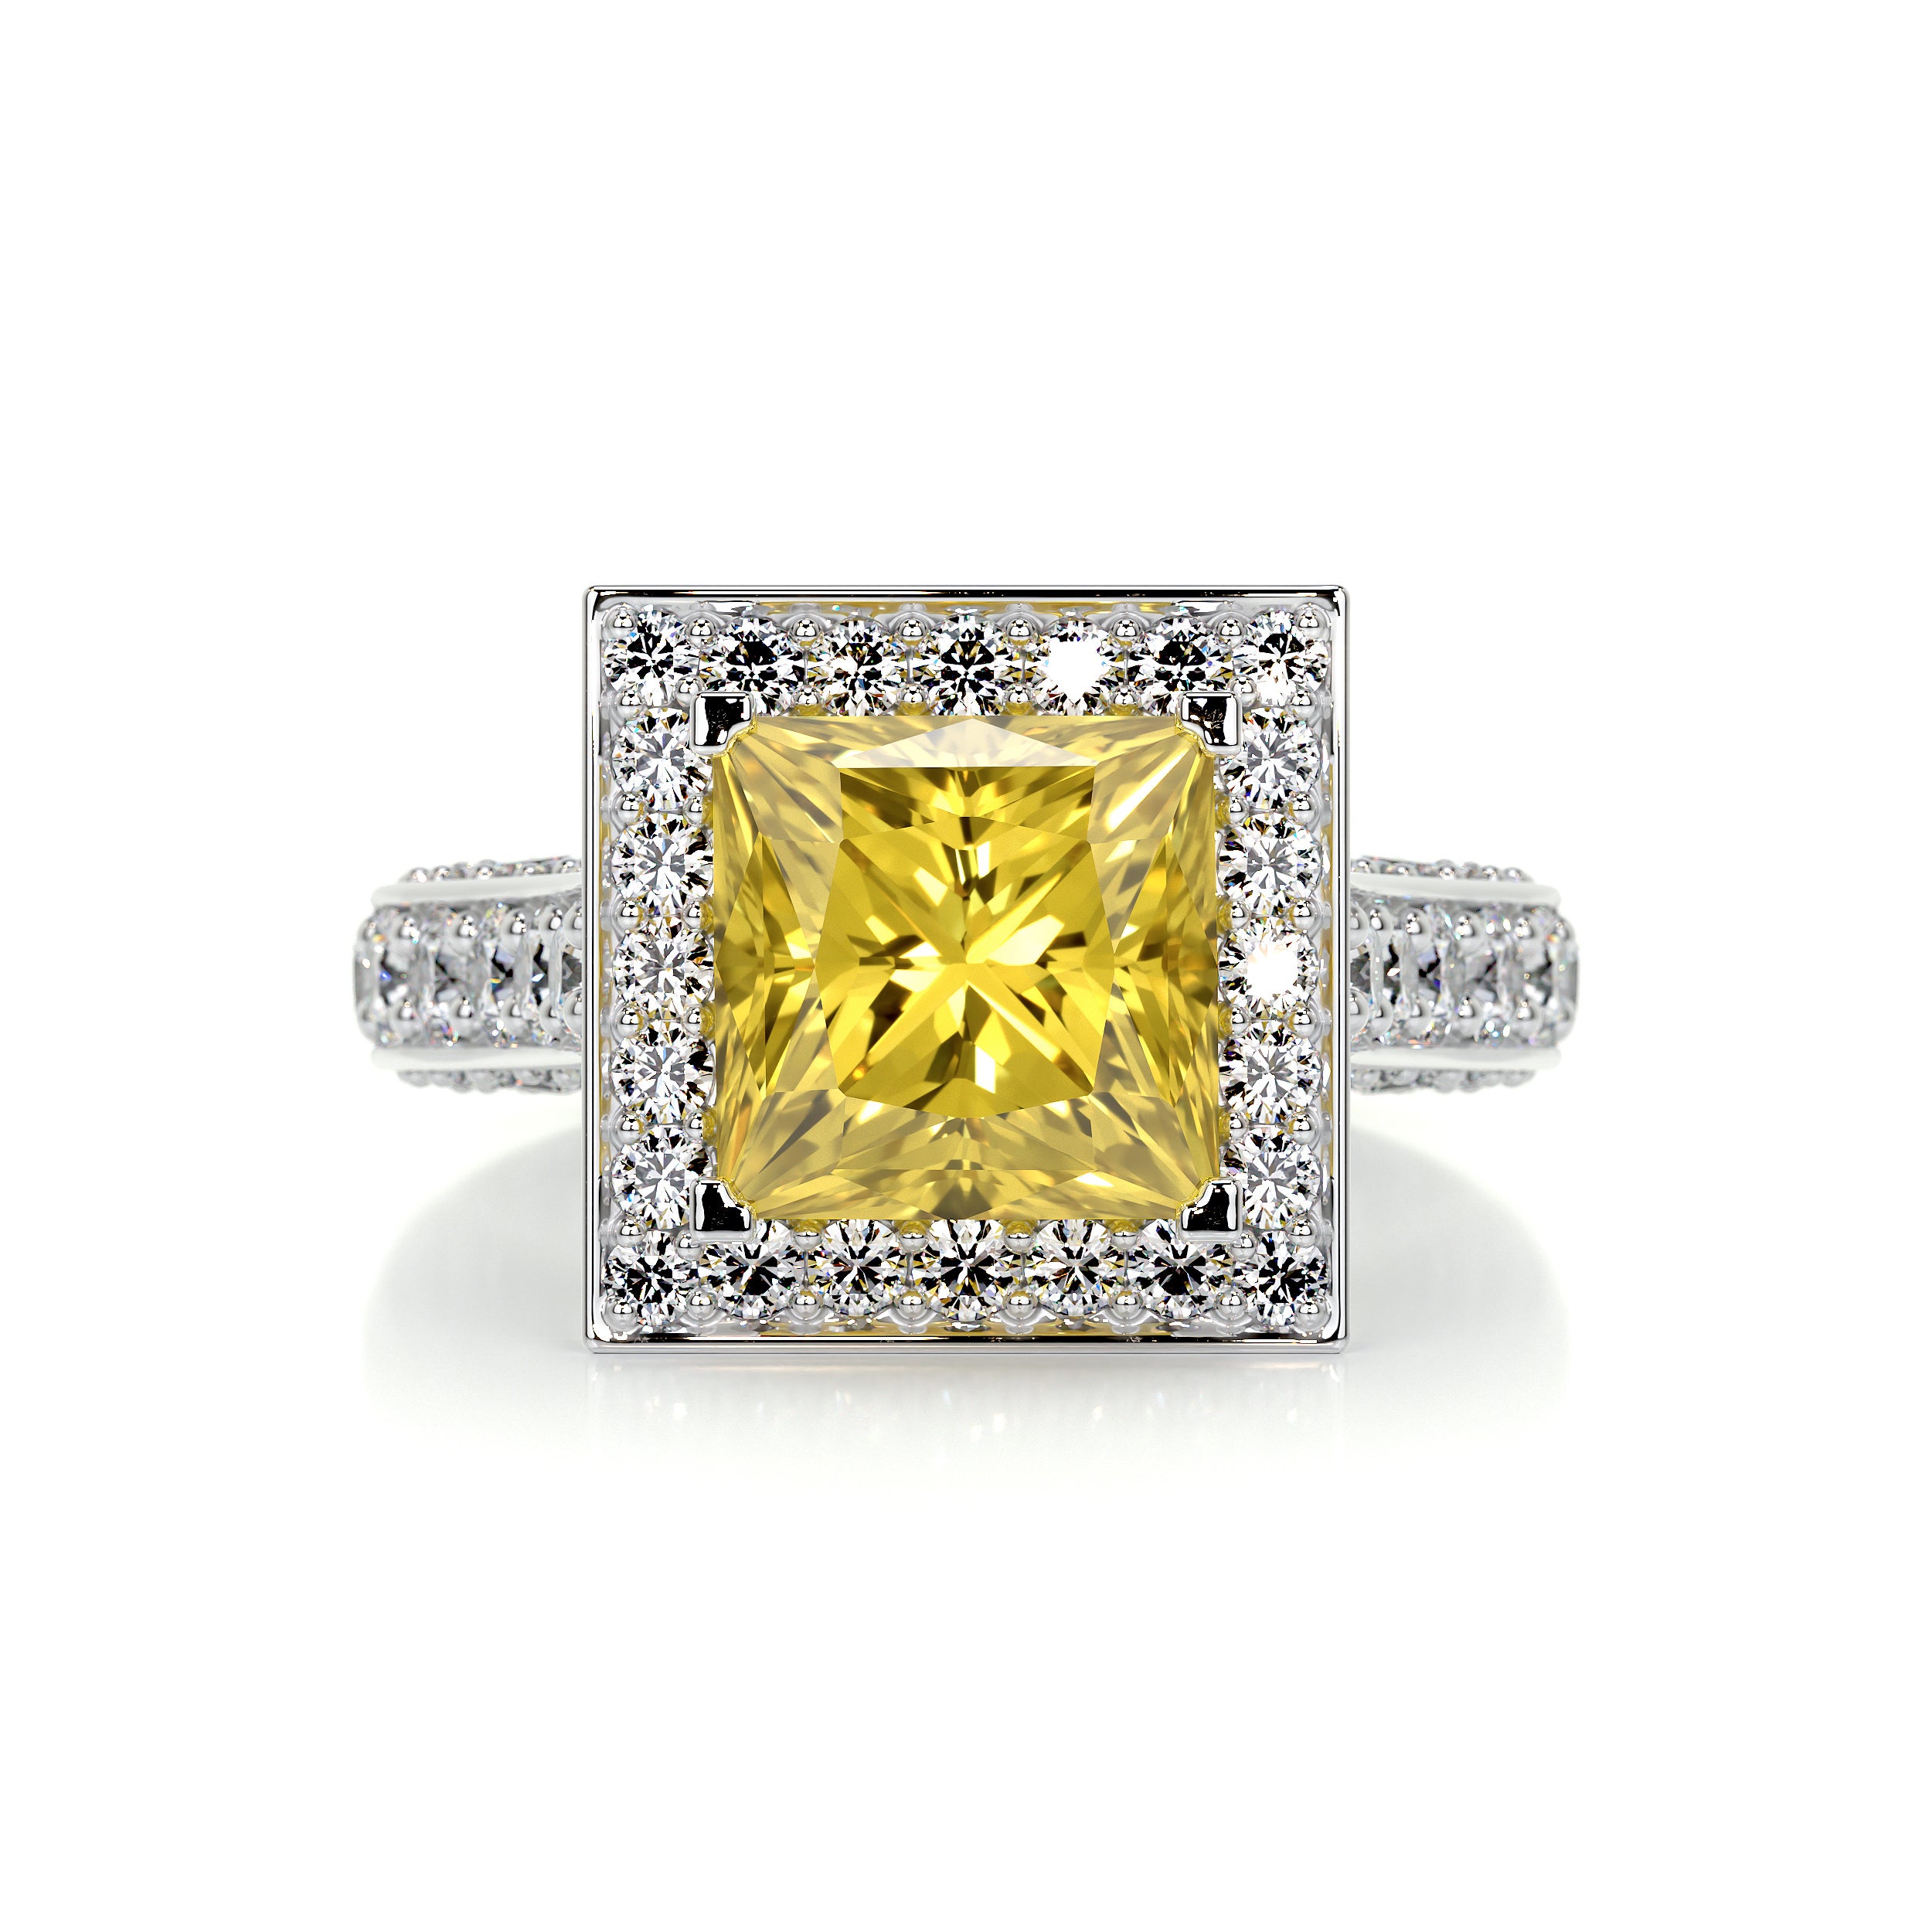 Freya Diamond Engagement Ring -18K White Gold